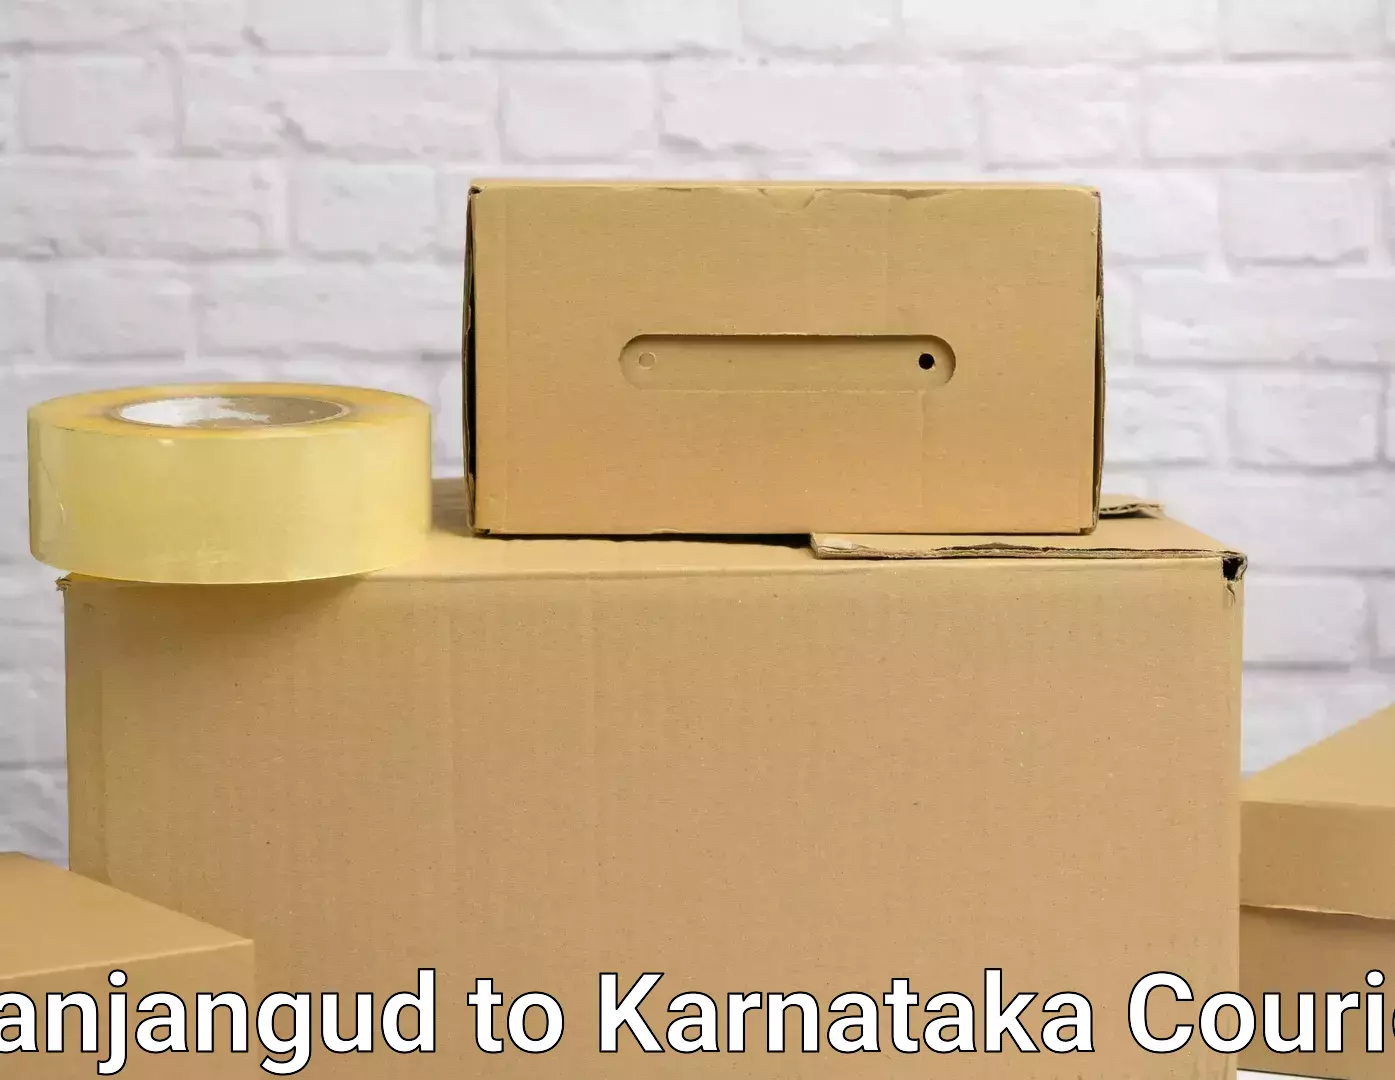 Furniture transport and logistics Nanjangud to Kalaburagi